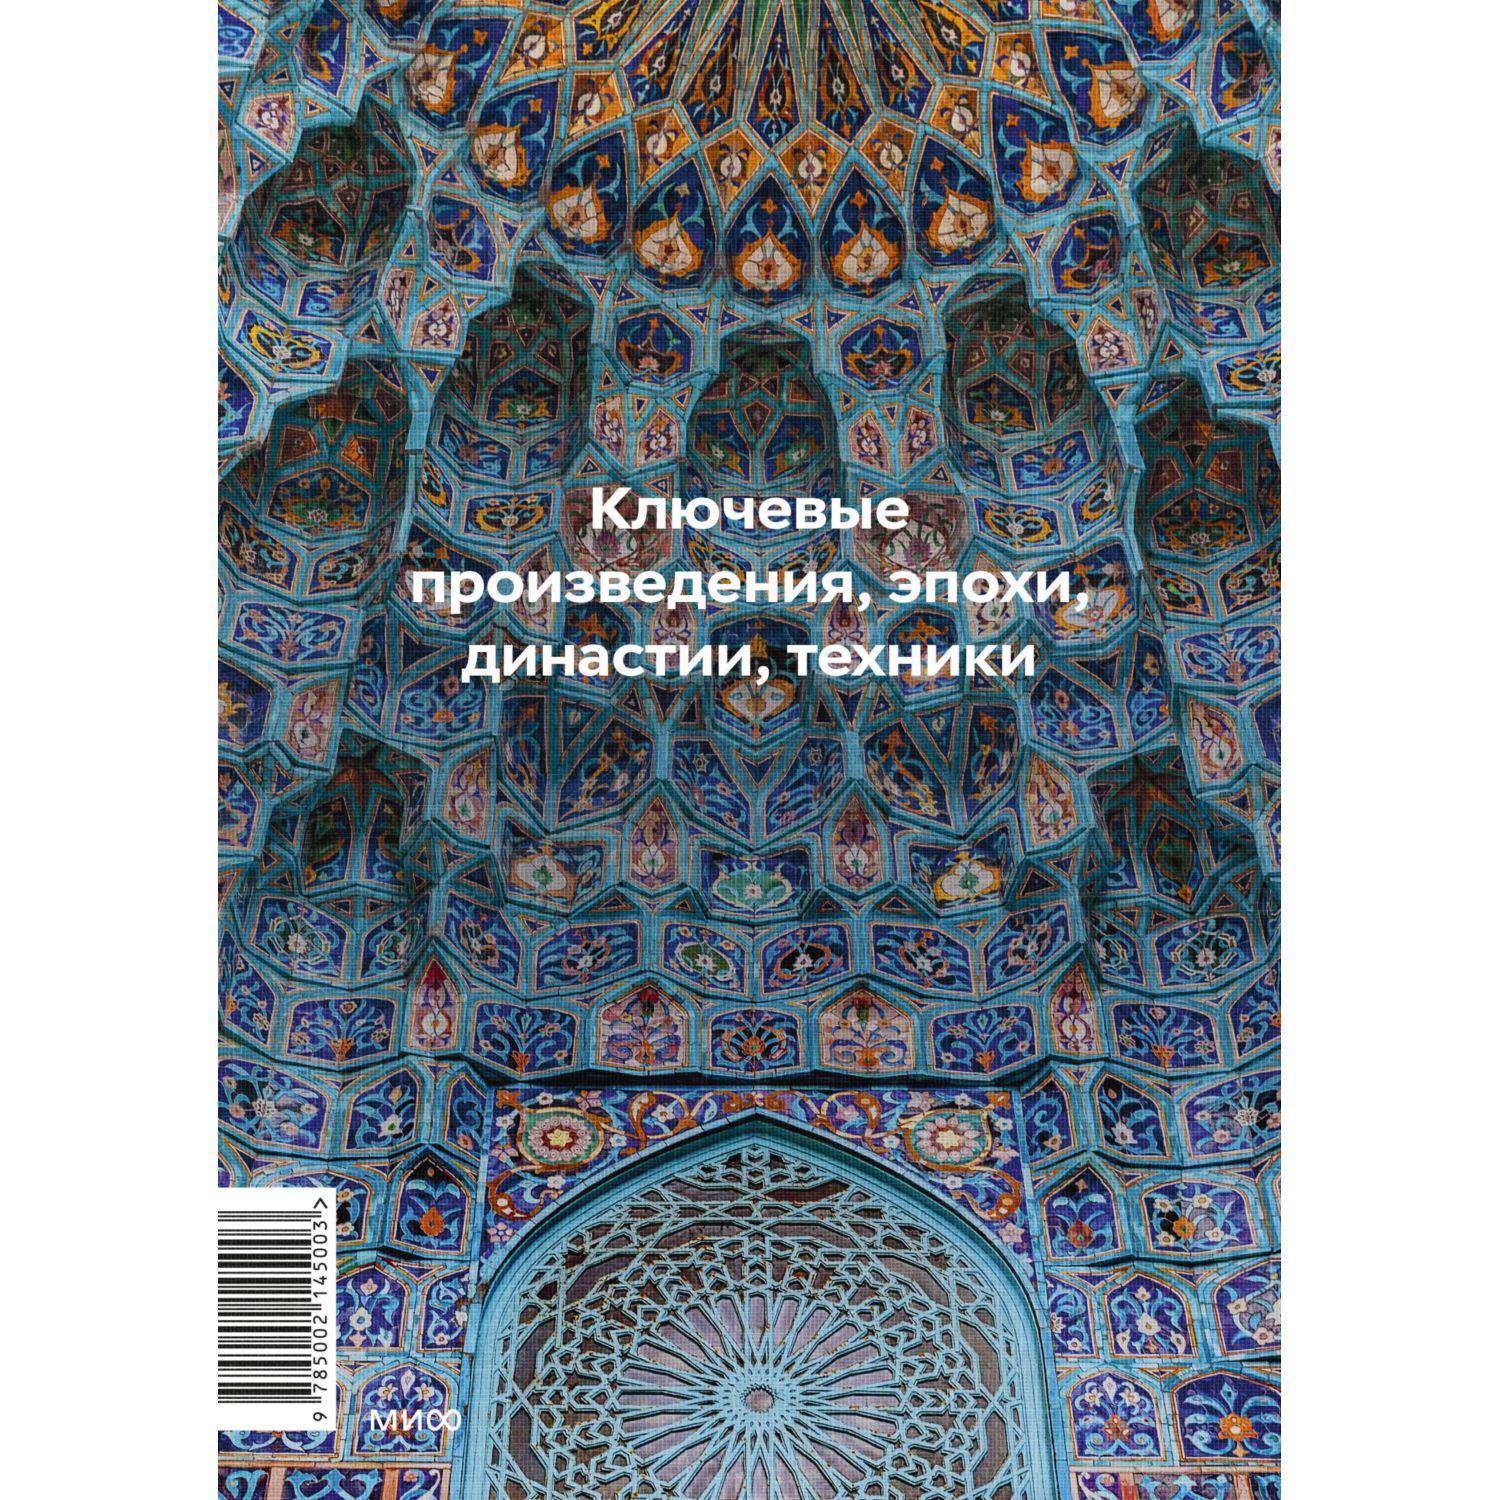 Книга Эксмо Главное в истории исламского искусства Ключевые произведения эпохи династии техники - фото 9